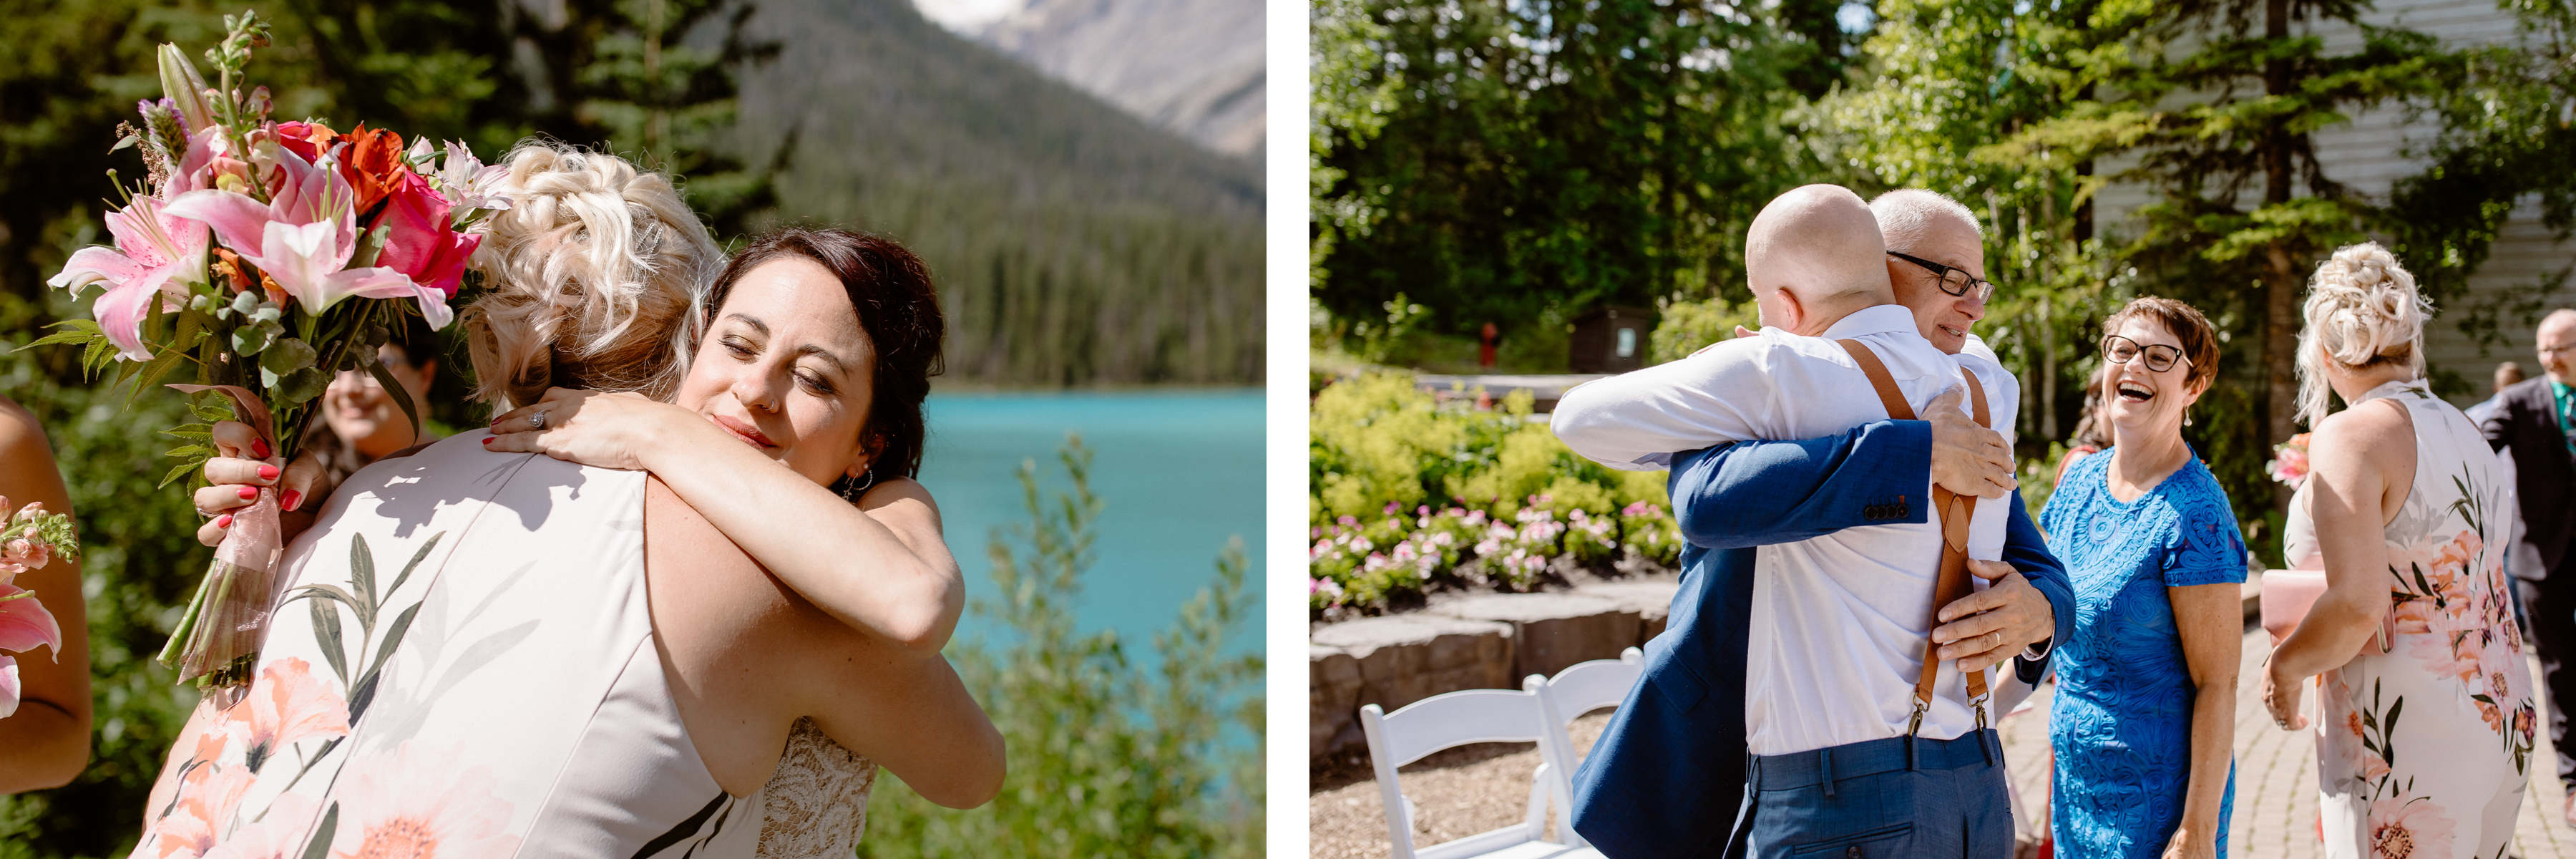 Emerald Lake Wedding Photographers - Image 23